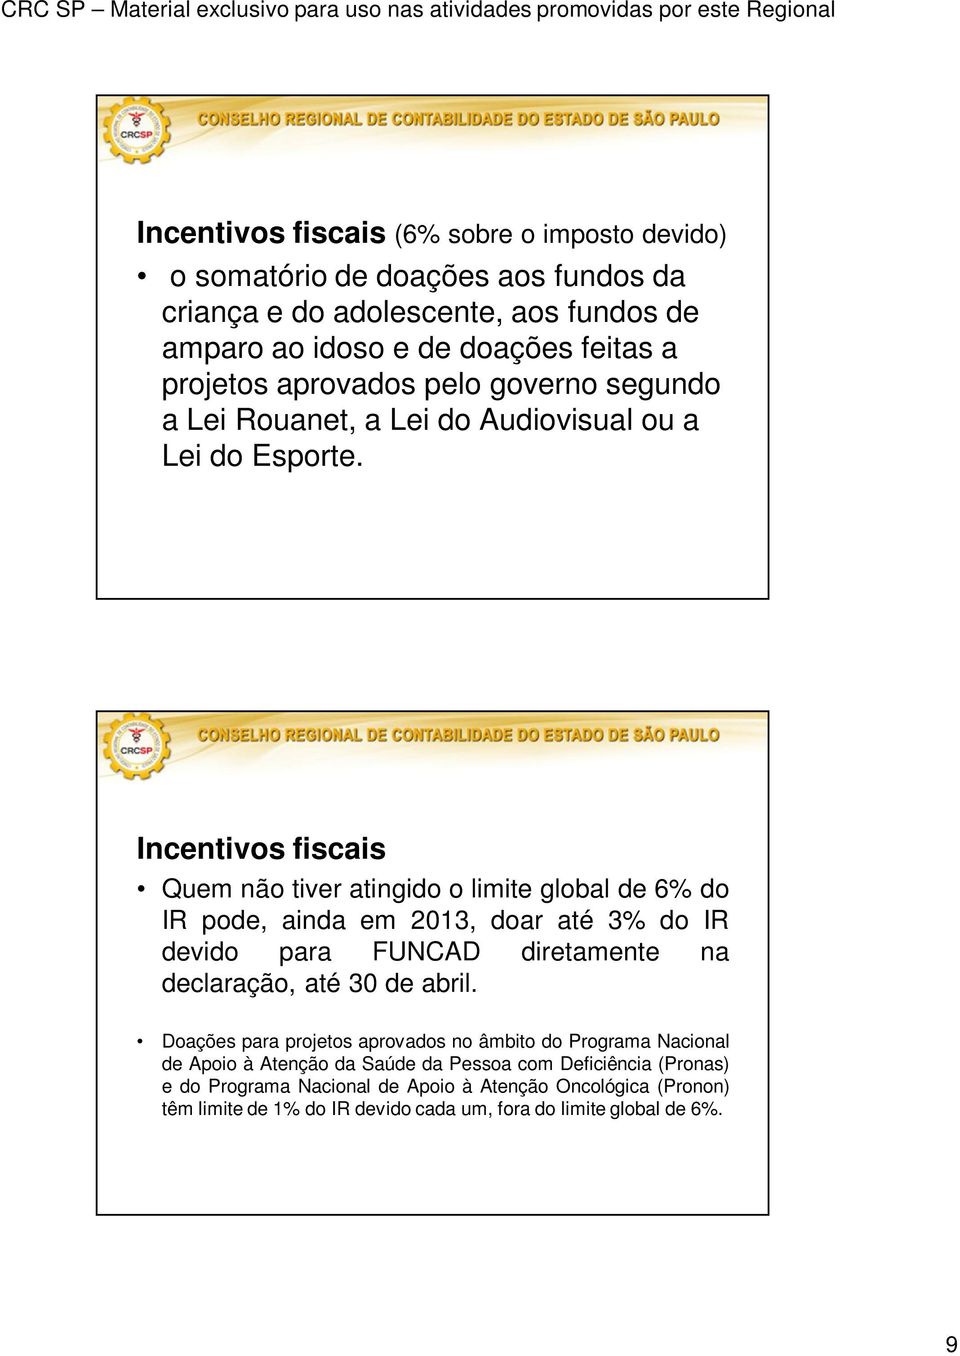 Incentivos fiscais Quem não tiver atingido o limite global de 6% do IR pode, ainda em 2013, doar até 3% do IR devido para FUNCAD diretamente na declaração, até 30 de abril.